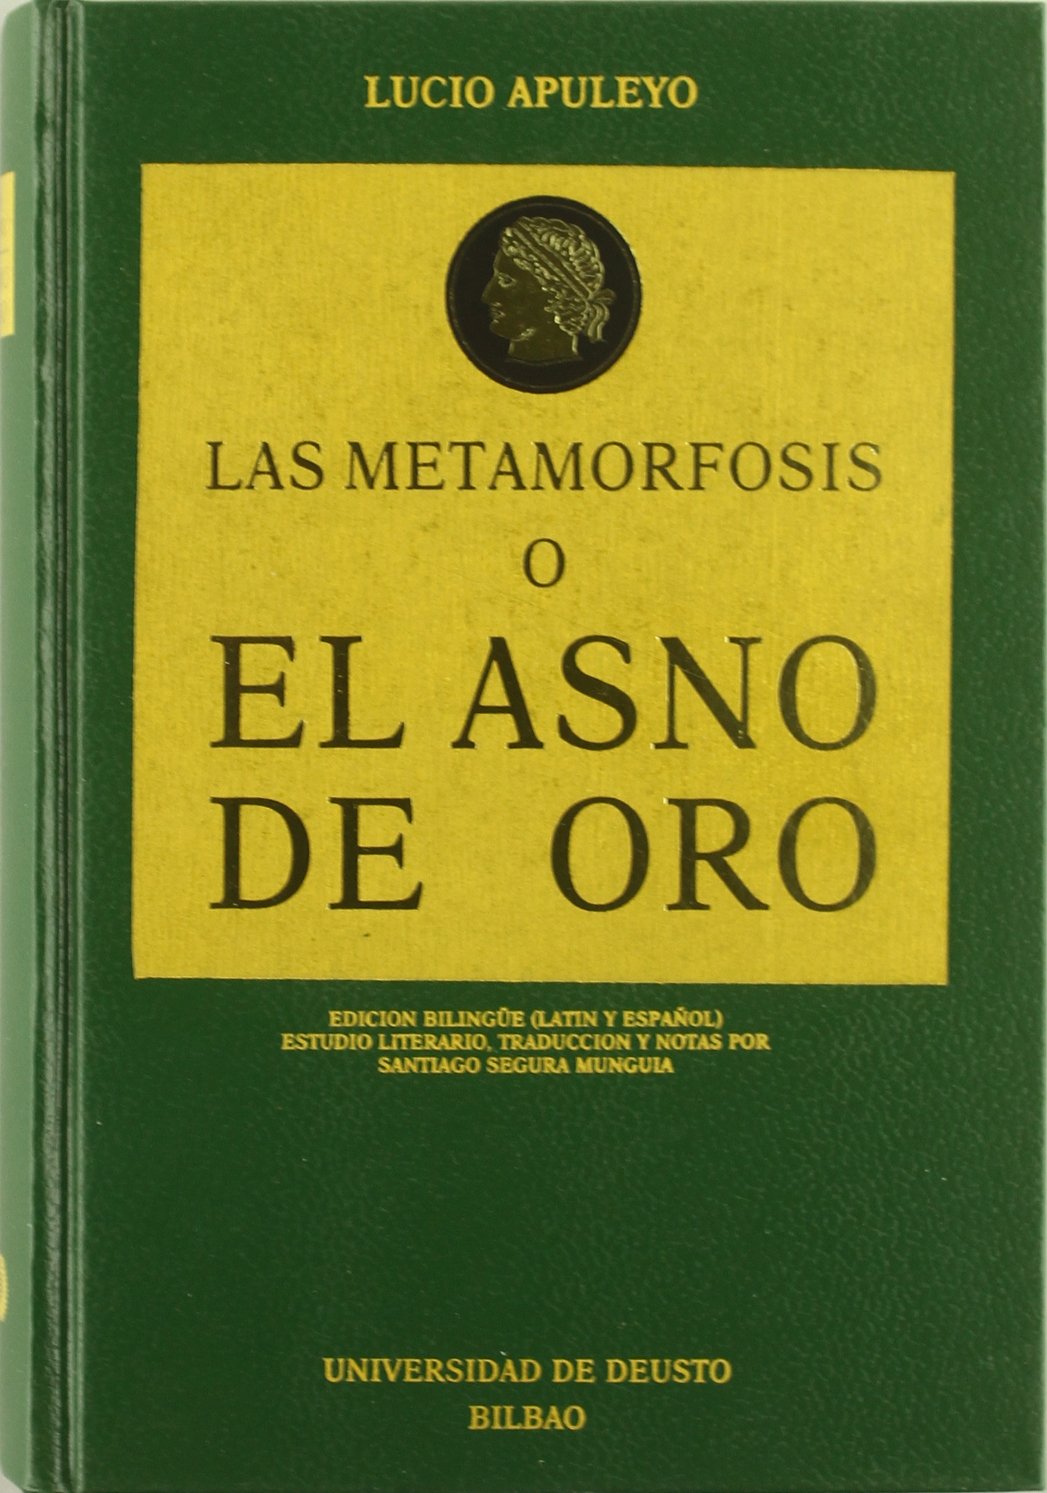 Imagen de portada del libro Las metamorfosis o El asno de oro